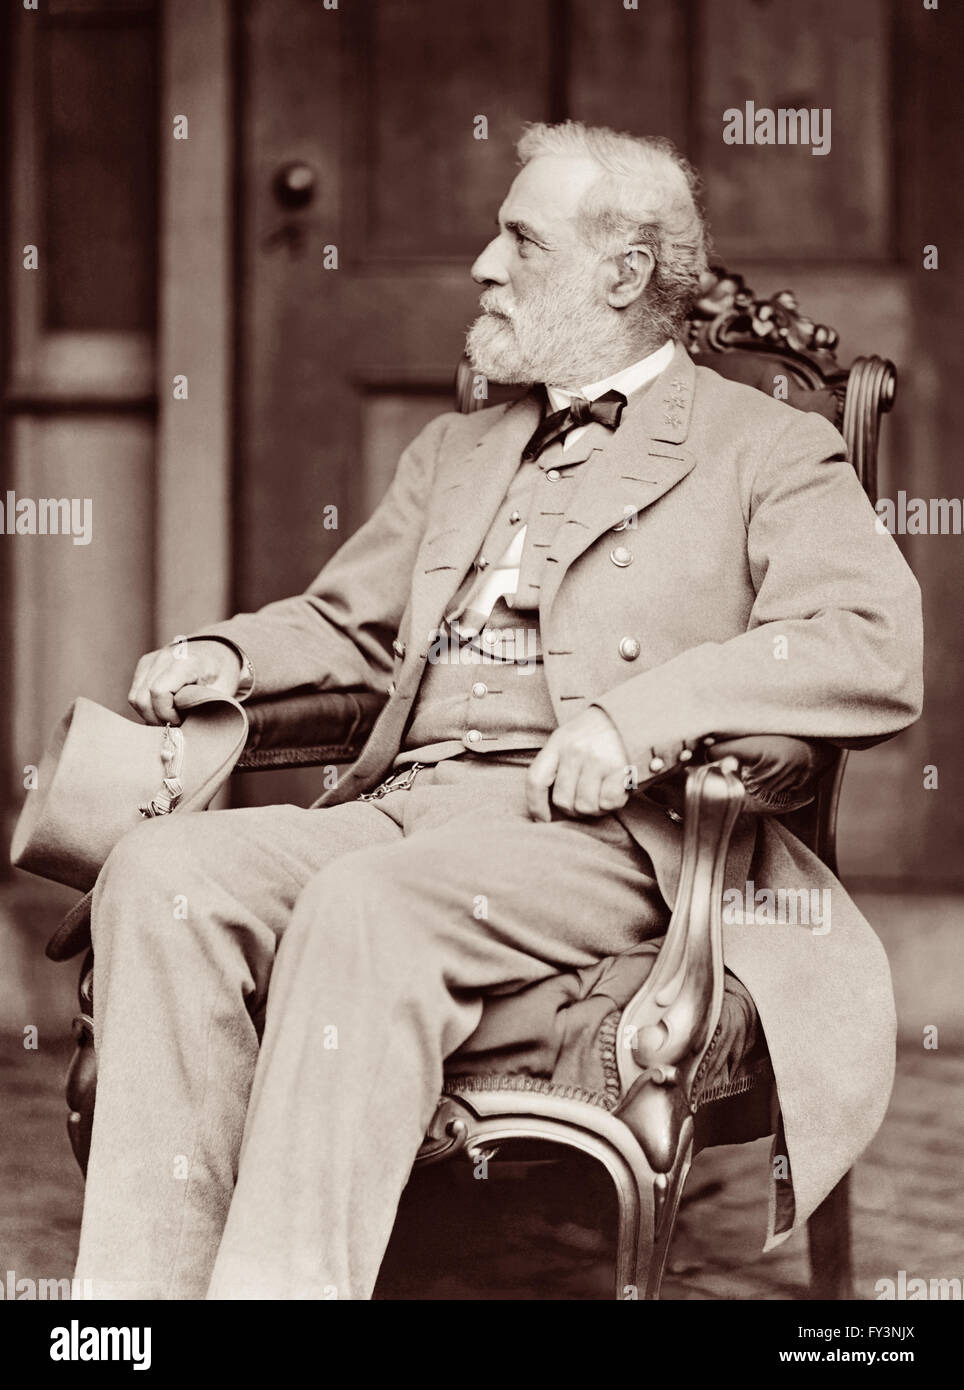 Robert E. Lee, il generale in capo delle forze confederate nella Guerra Civile Americana, in una fotografia dal leggendario fotografo Matteo Brady a Lee's home in Richmond, Virginia in aprile, 1865. Foto Stock